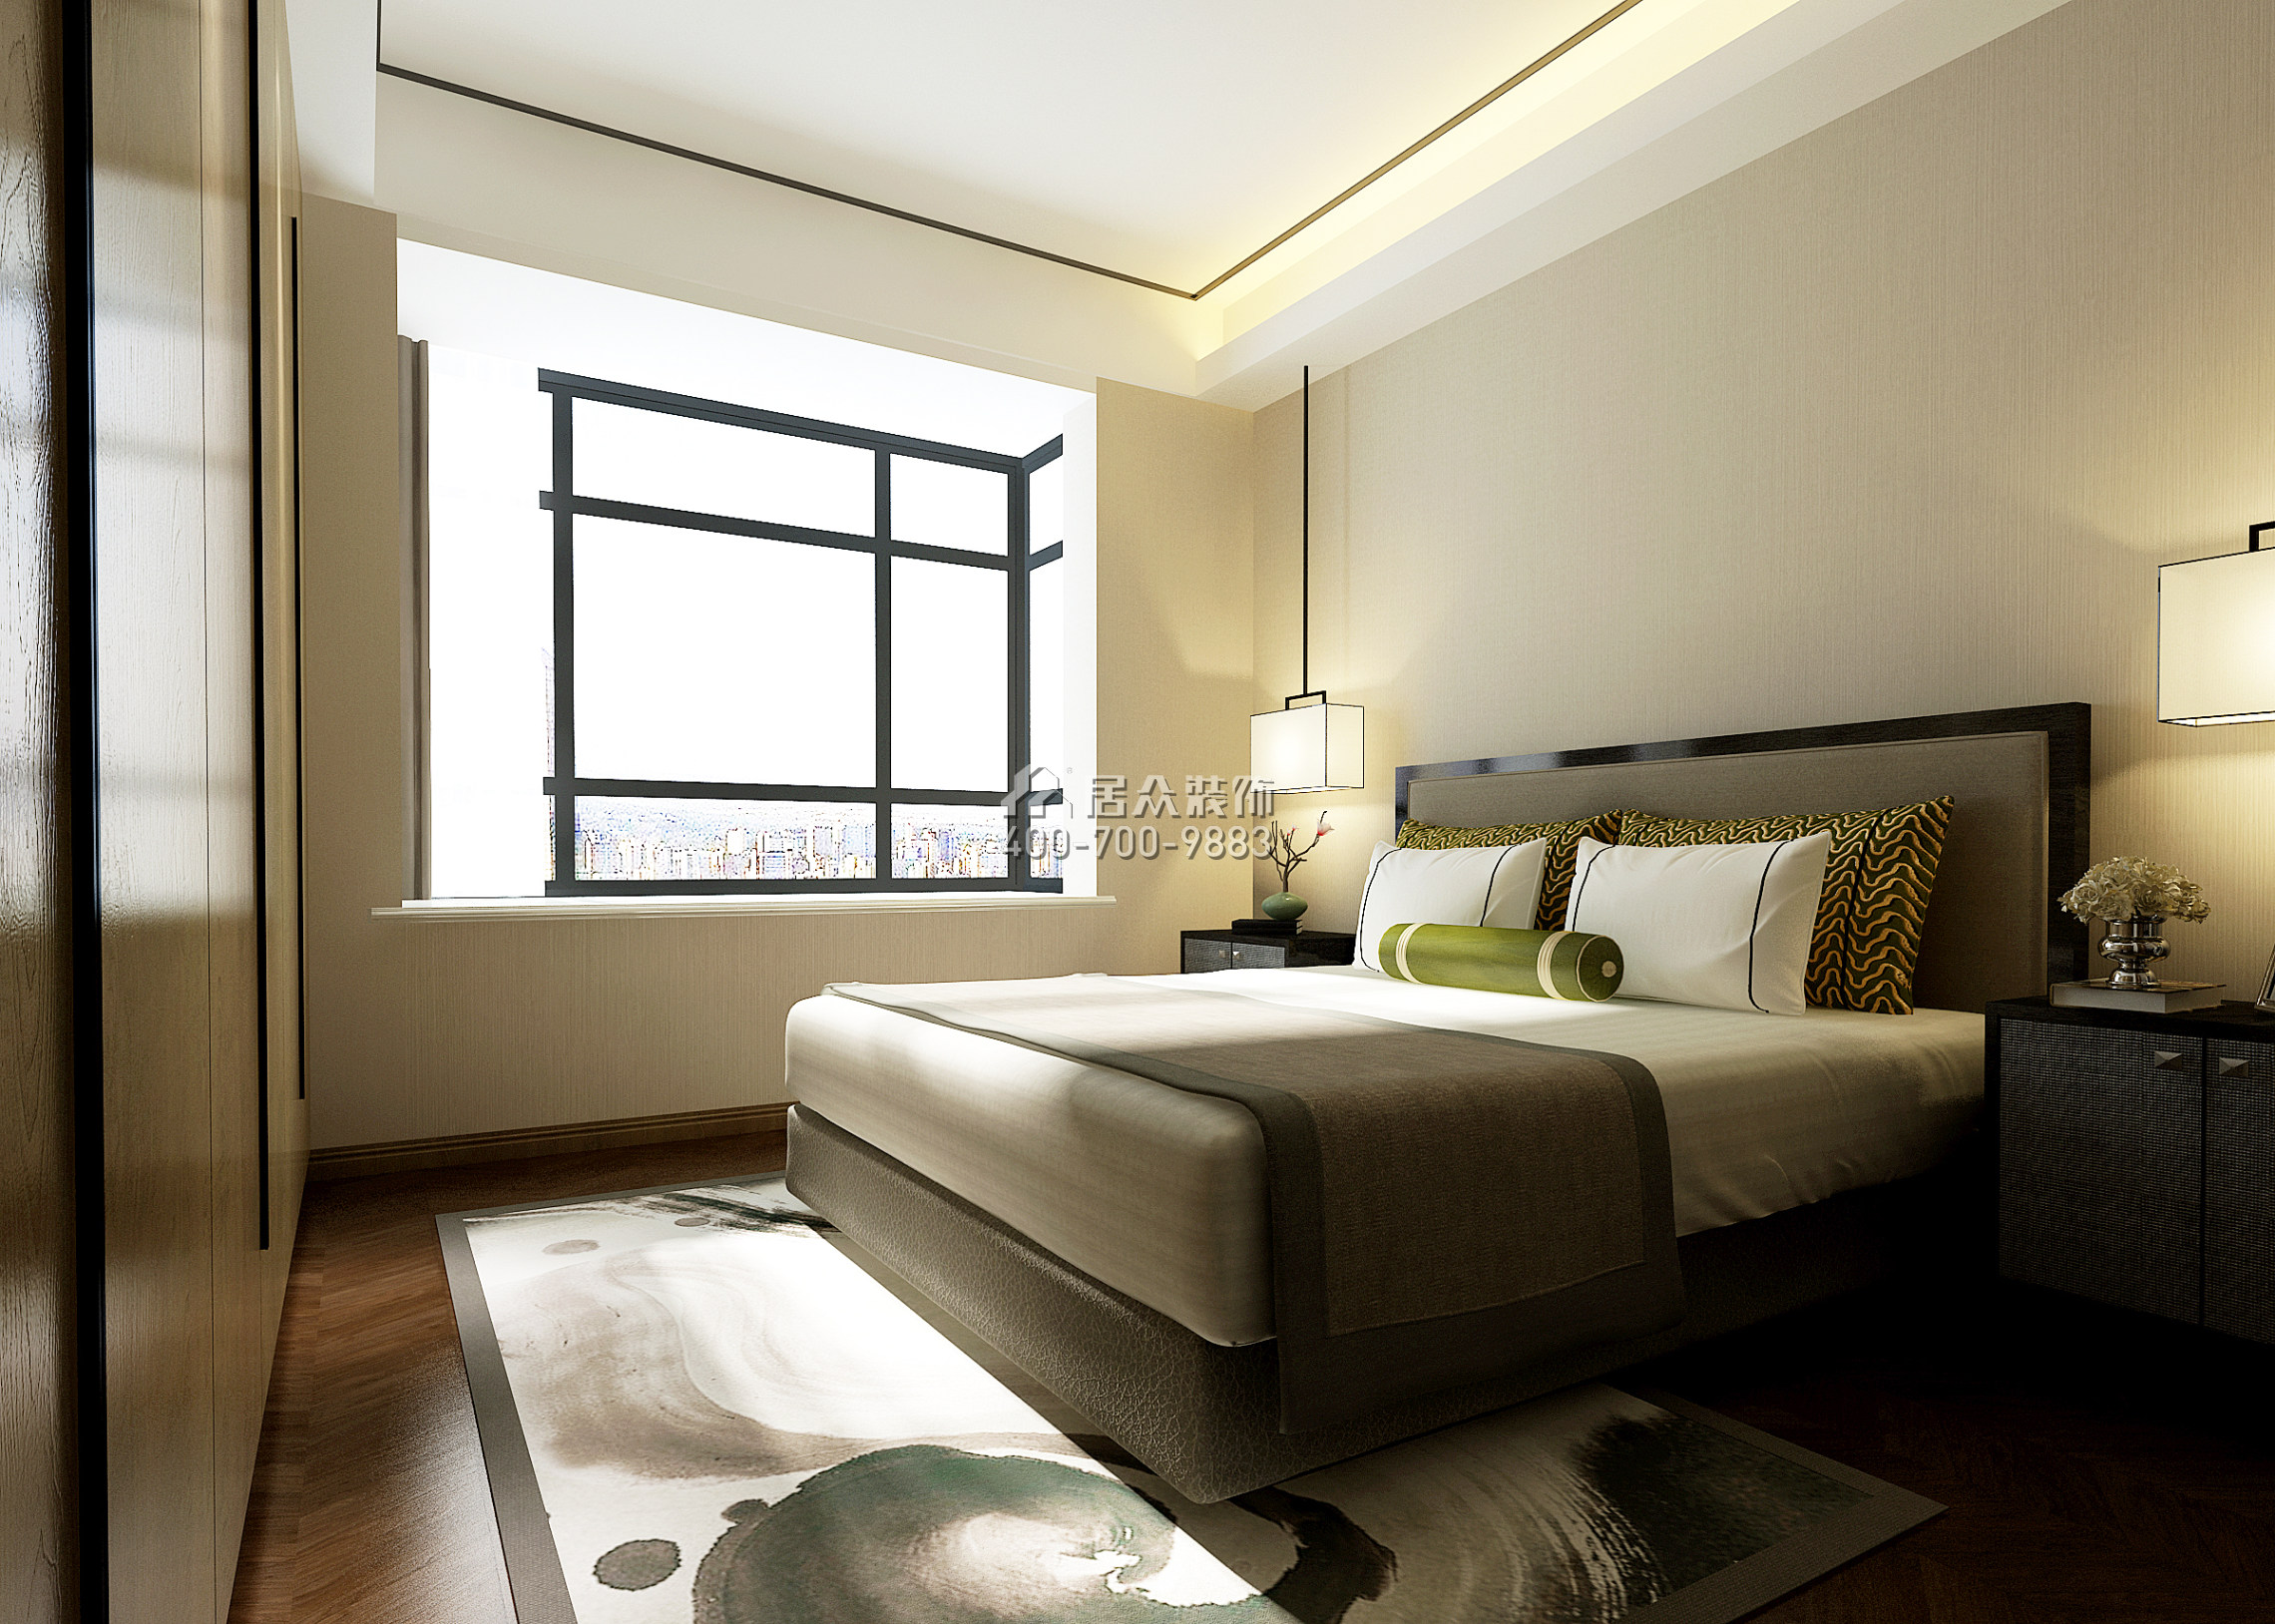 德景园159平方米中式风格平层户型卧室装修效果图